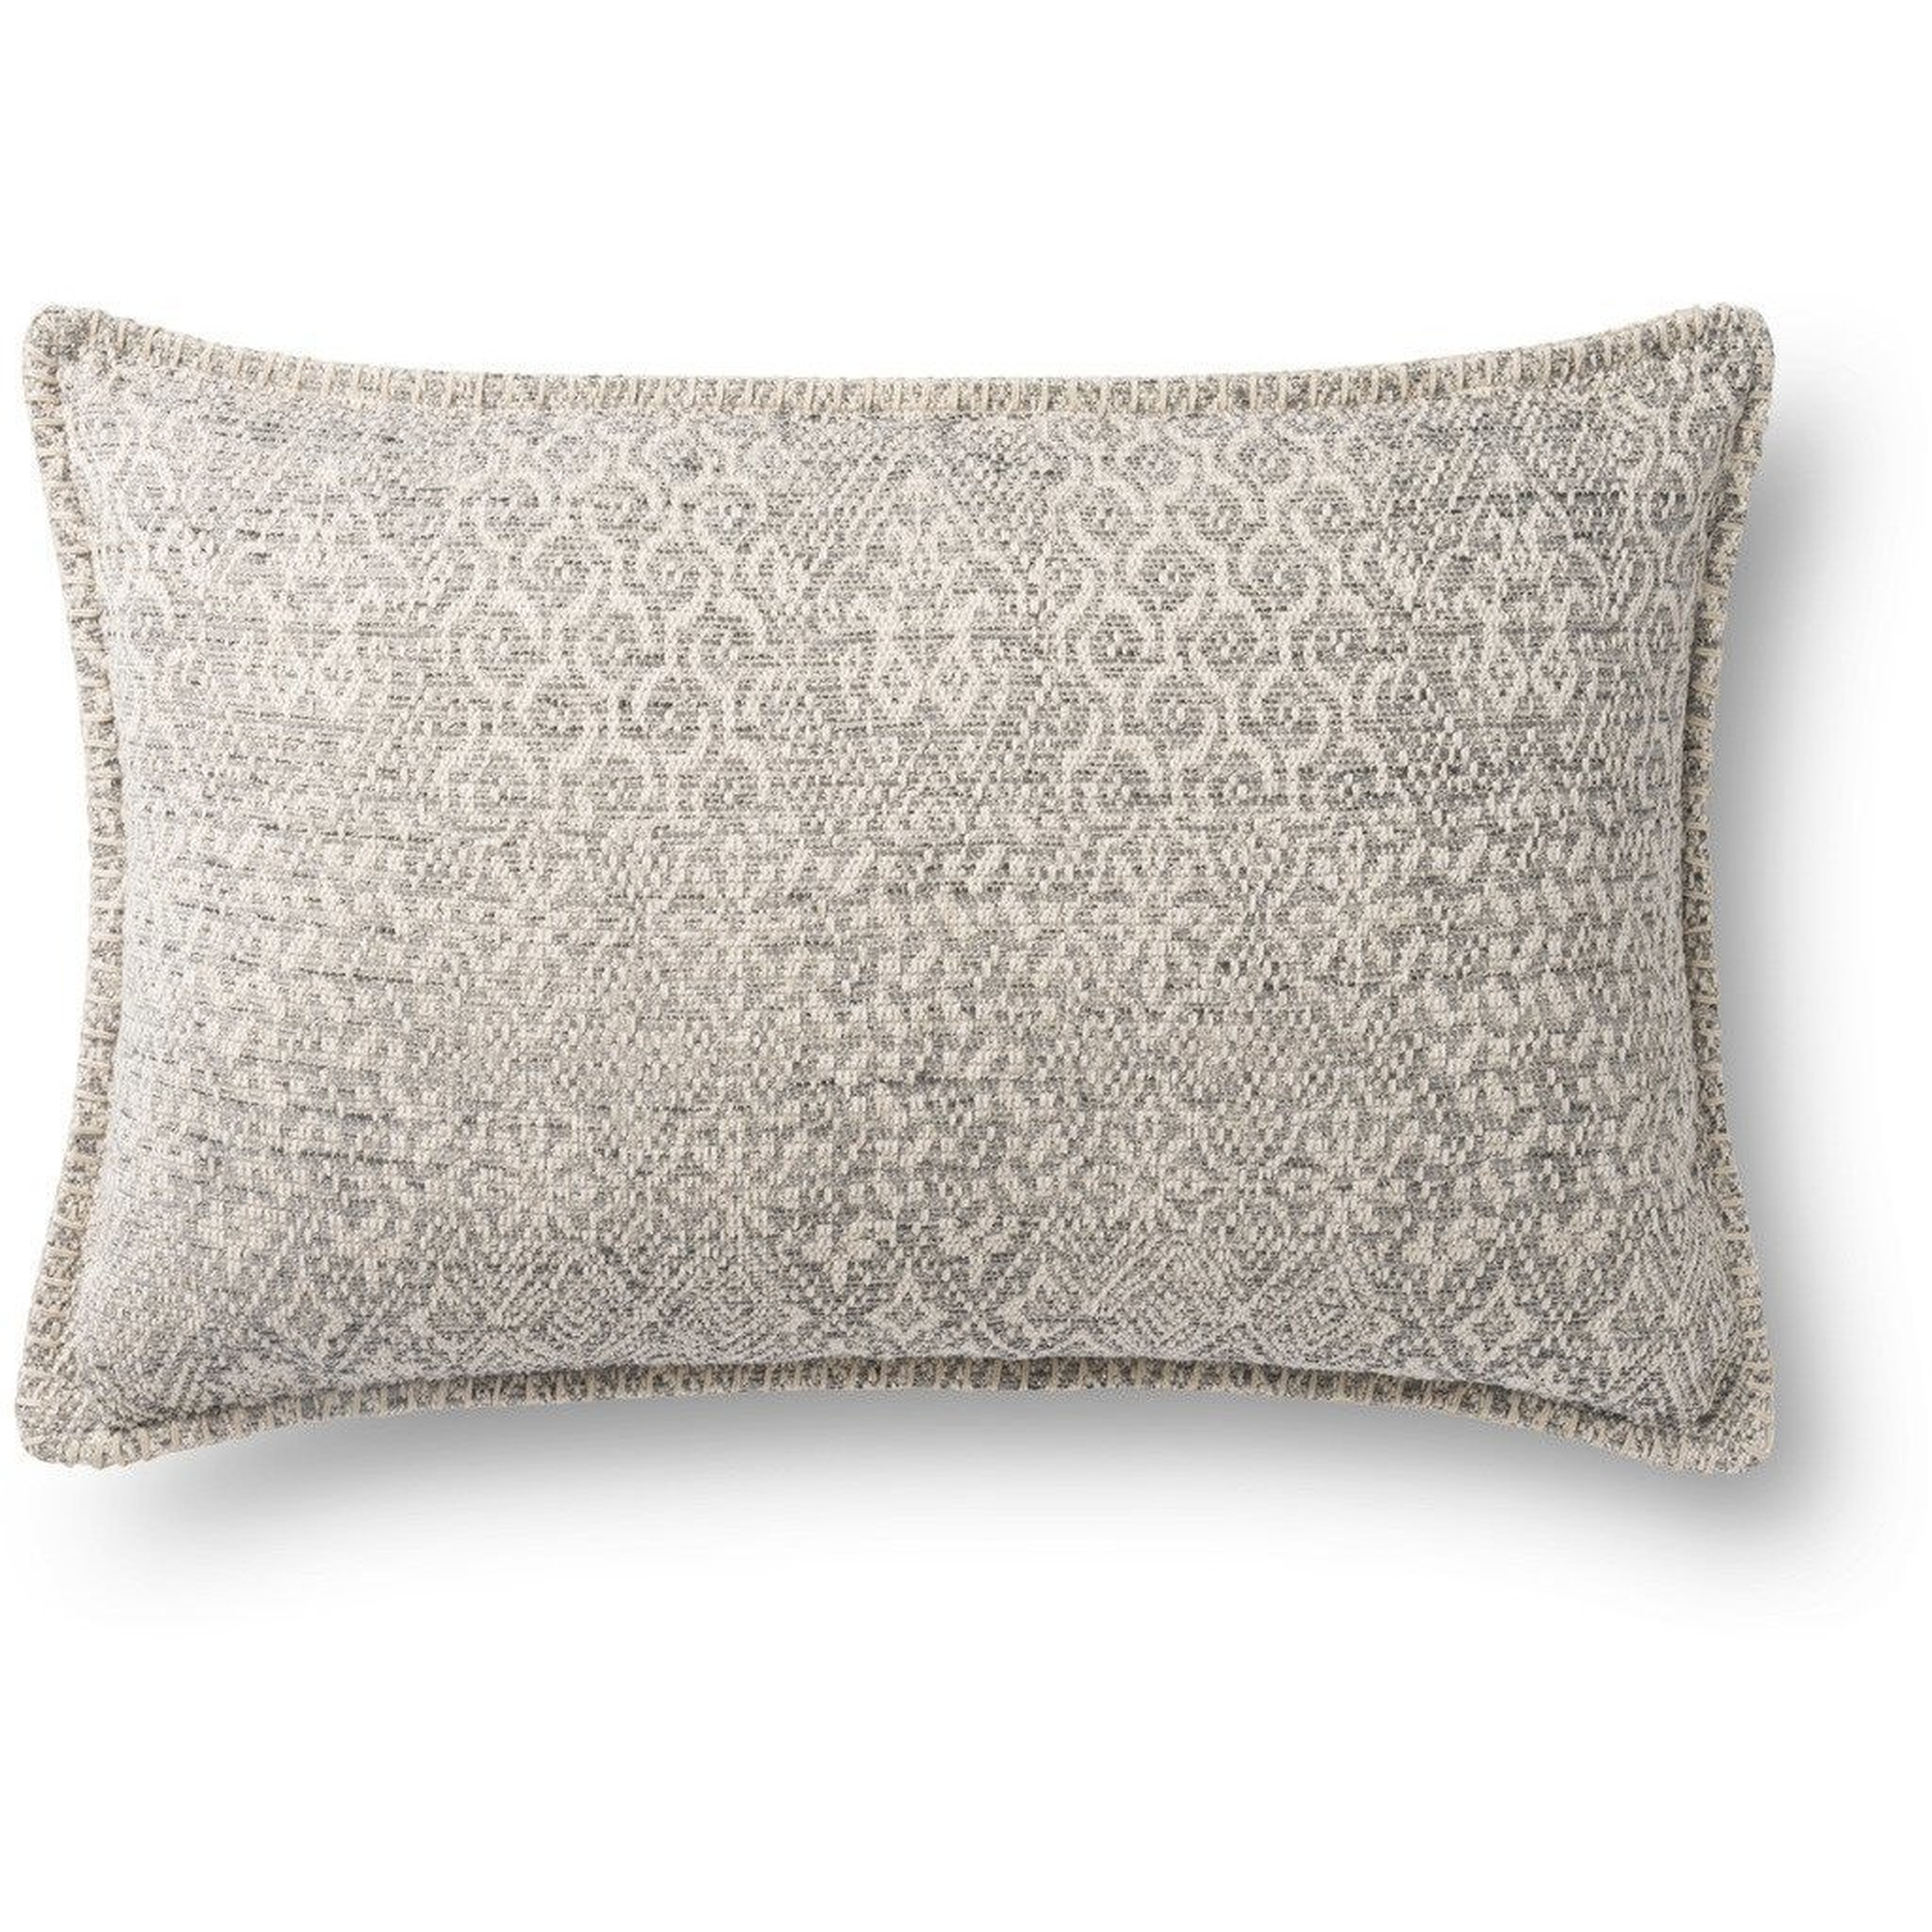 Jacquard Lumbar Throw Pillow, 13" x 21", Gray & Ivory - Loloi Rugs